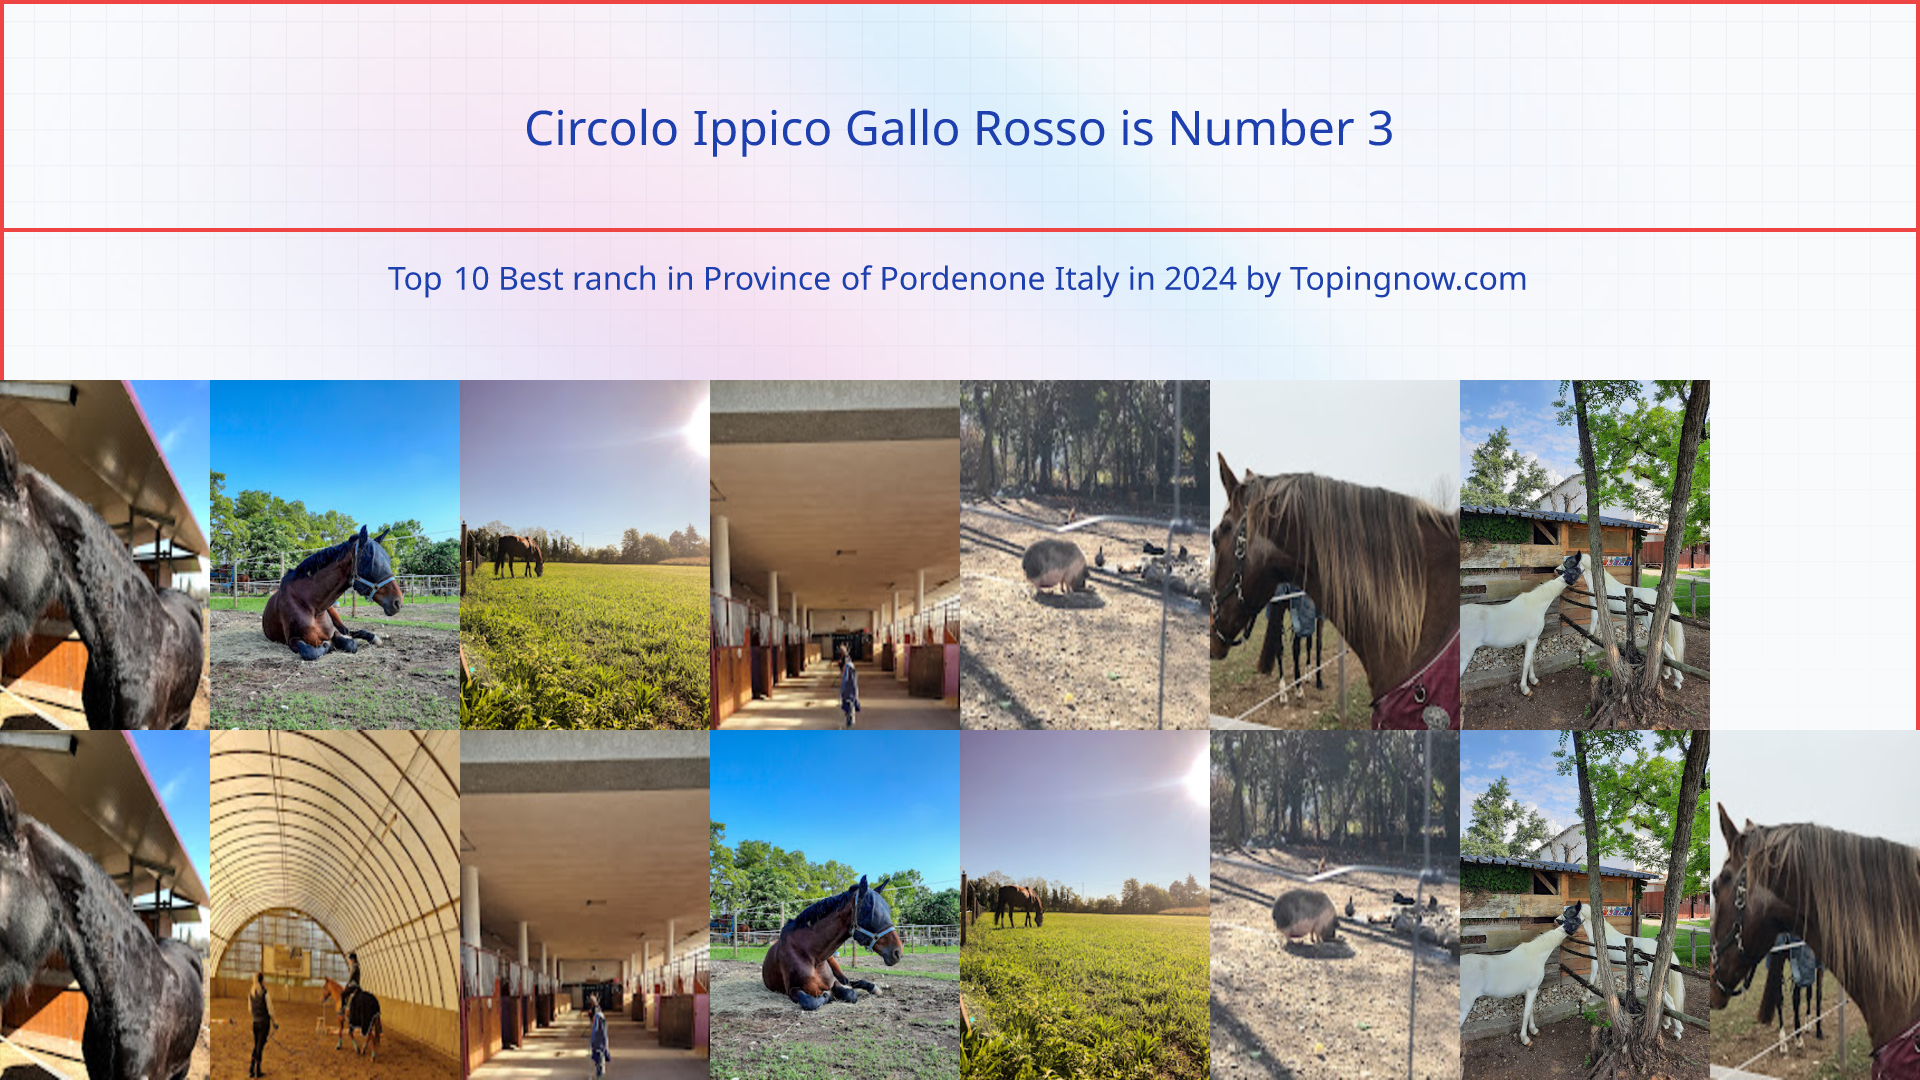 Circolo Ippico Gallo Rosso: Top 10 Best ranch in Province of Pordenone Italy in 2024